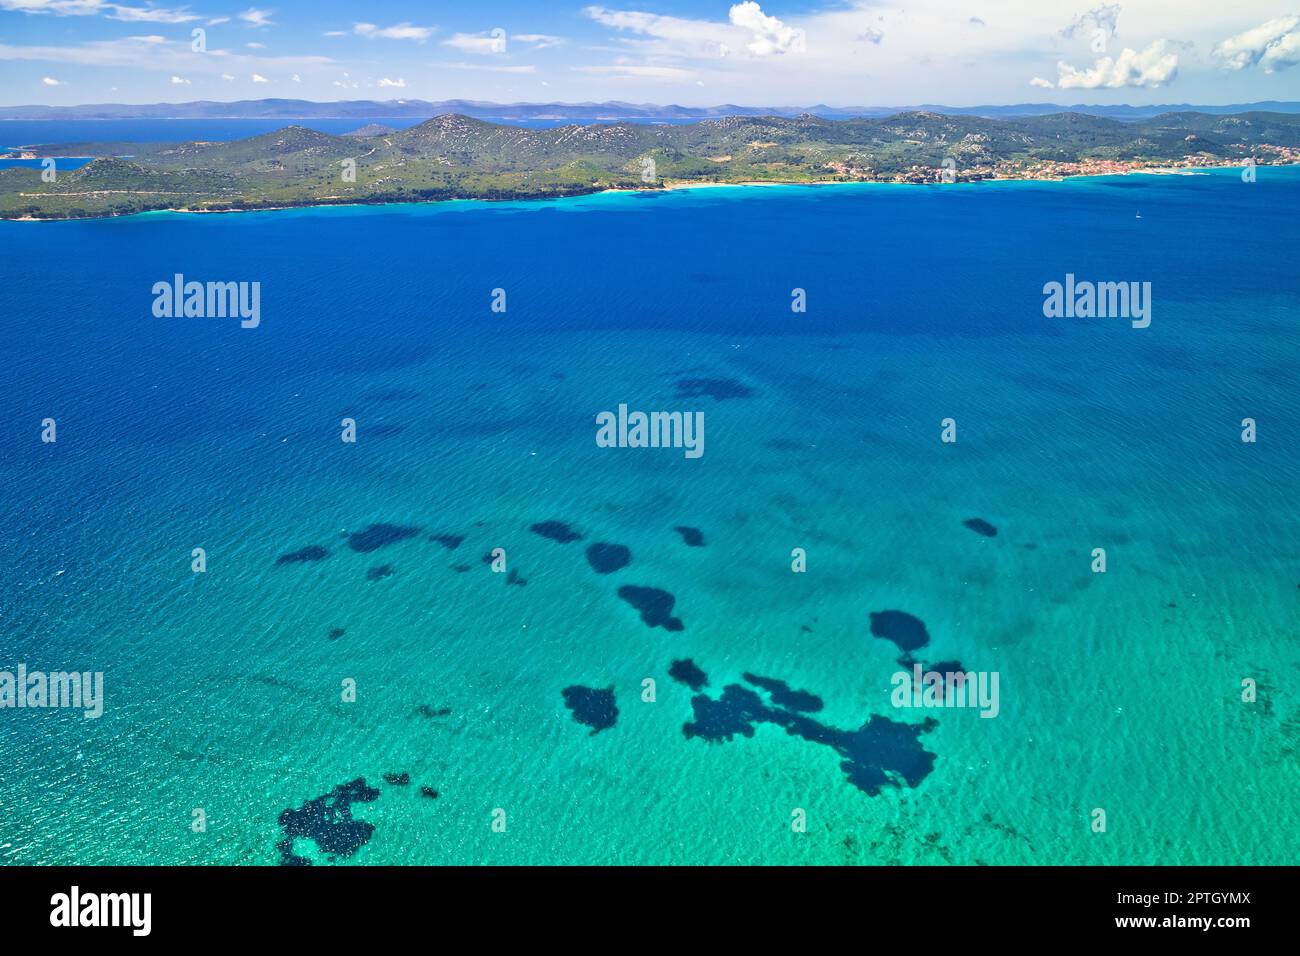 Île de Pasman et vue aérienne sur la mer turquoise, archipel de Dalmatie en Croatie Banque D'Images